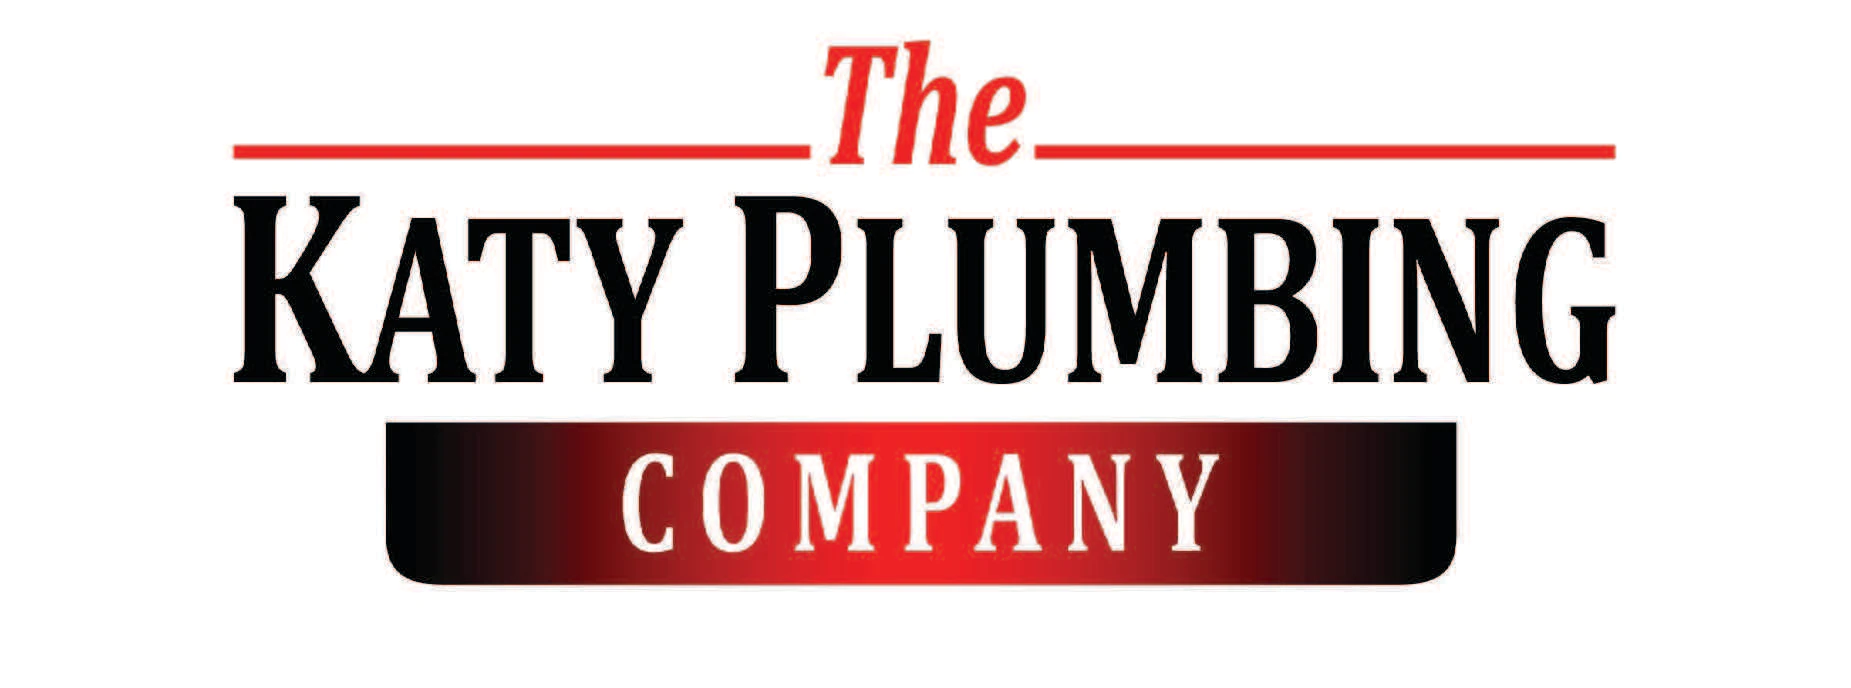 The Katy Plumbing Company